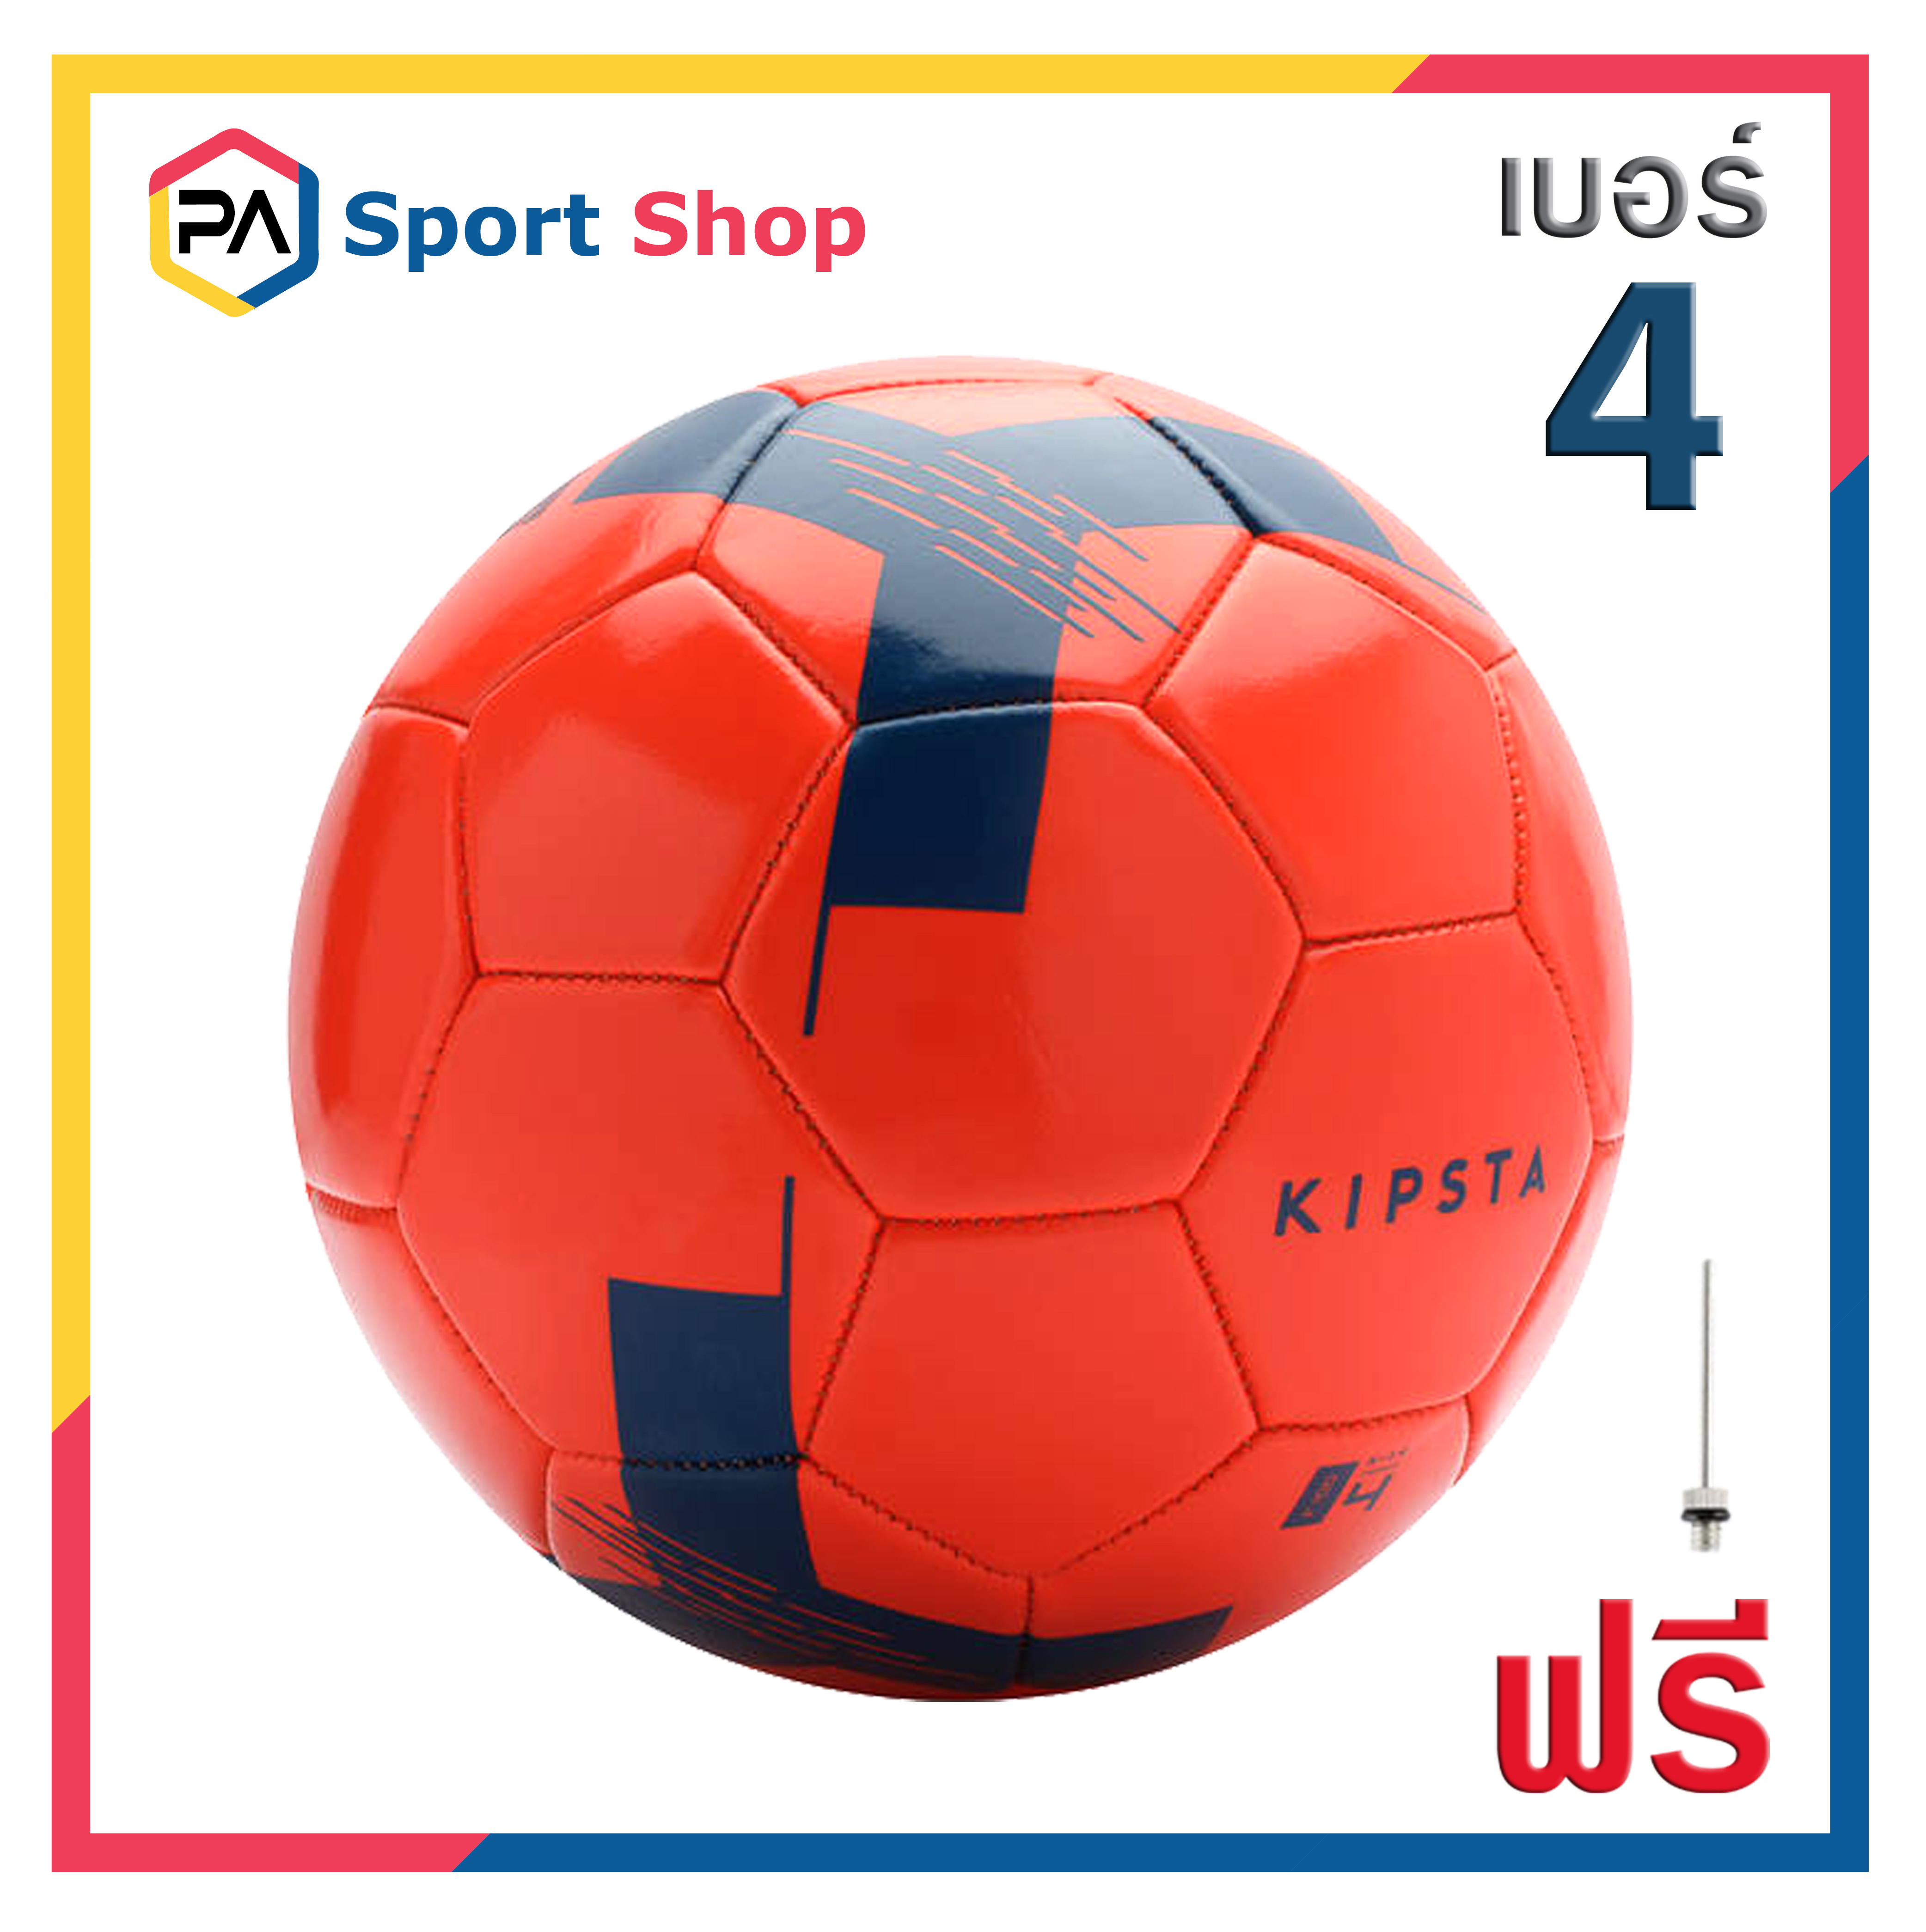 ลูกฟุตบอล ลูกบอล เบอร์ 5, 4, 3 ยี่ห้อ KIPSTA หนังเย็บ PVC สินค้าแท้ 100% Football Soccer Ball Size 5, 4, 3 เล่นได้ทั้งเด็กและผู้ใหญ่ พร้อมส่งทั่วไทย